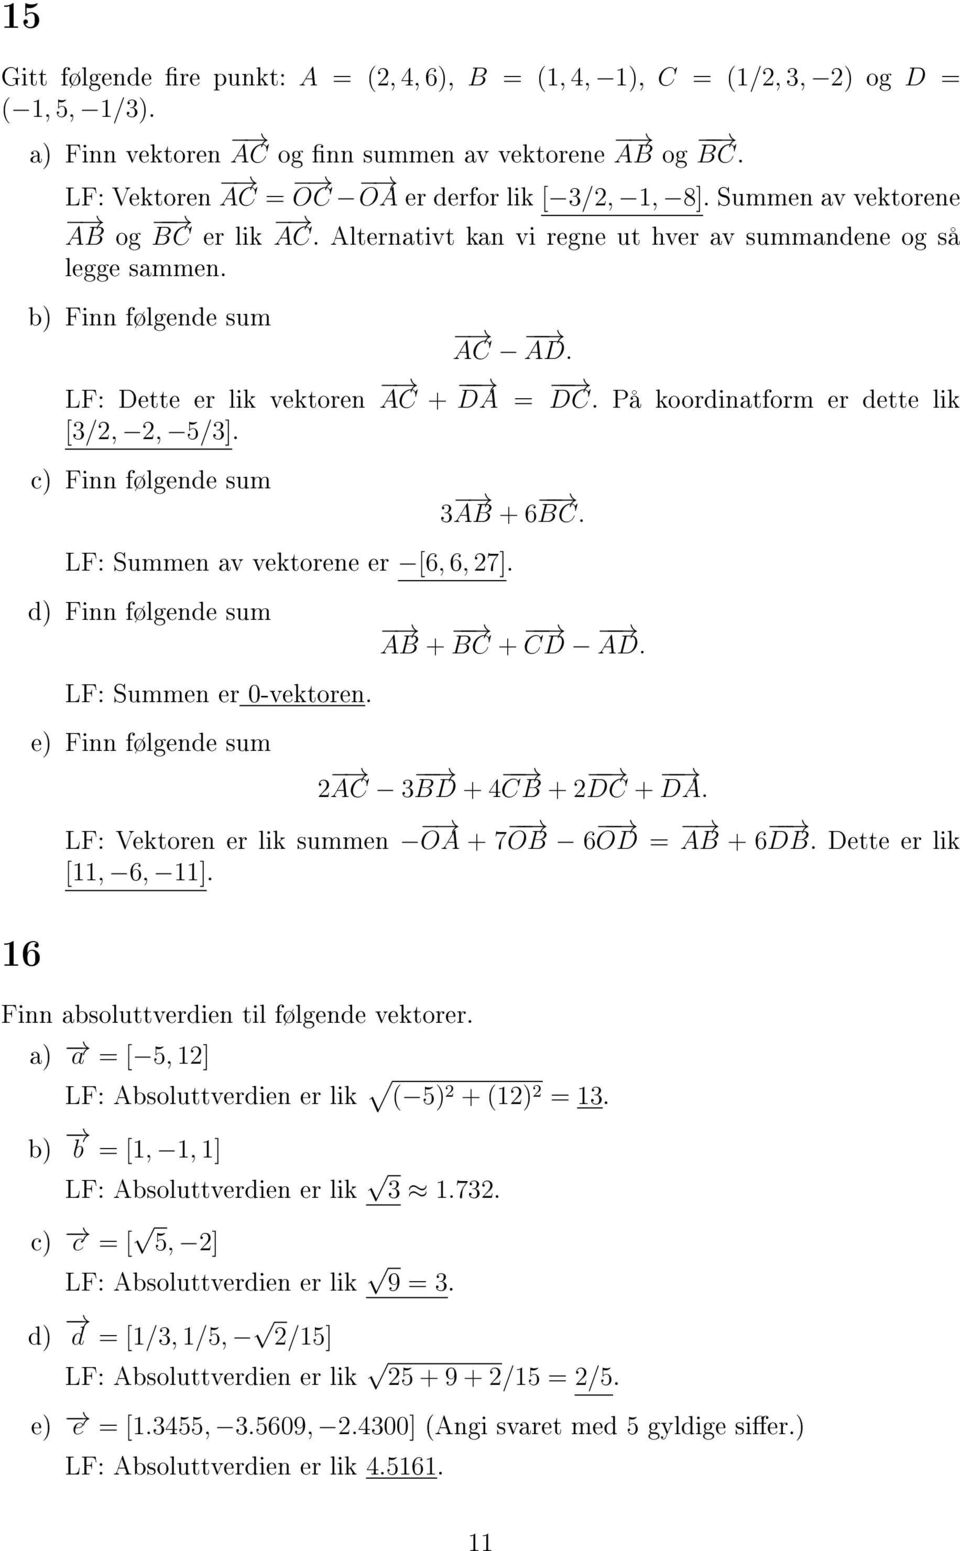 c) Finn følgende sum LF: Summen av vektorene er [6, 6, 7] d) Finn følgende sum LF: Summen er 0-vektoren e) Finn følgende sum 3 AB + 6 BC AB + BC + CD AD AC 3 BD + CB + DC + DA LF: Vektoren er lik